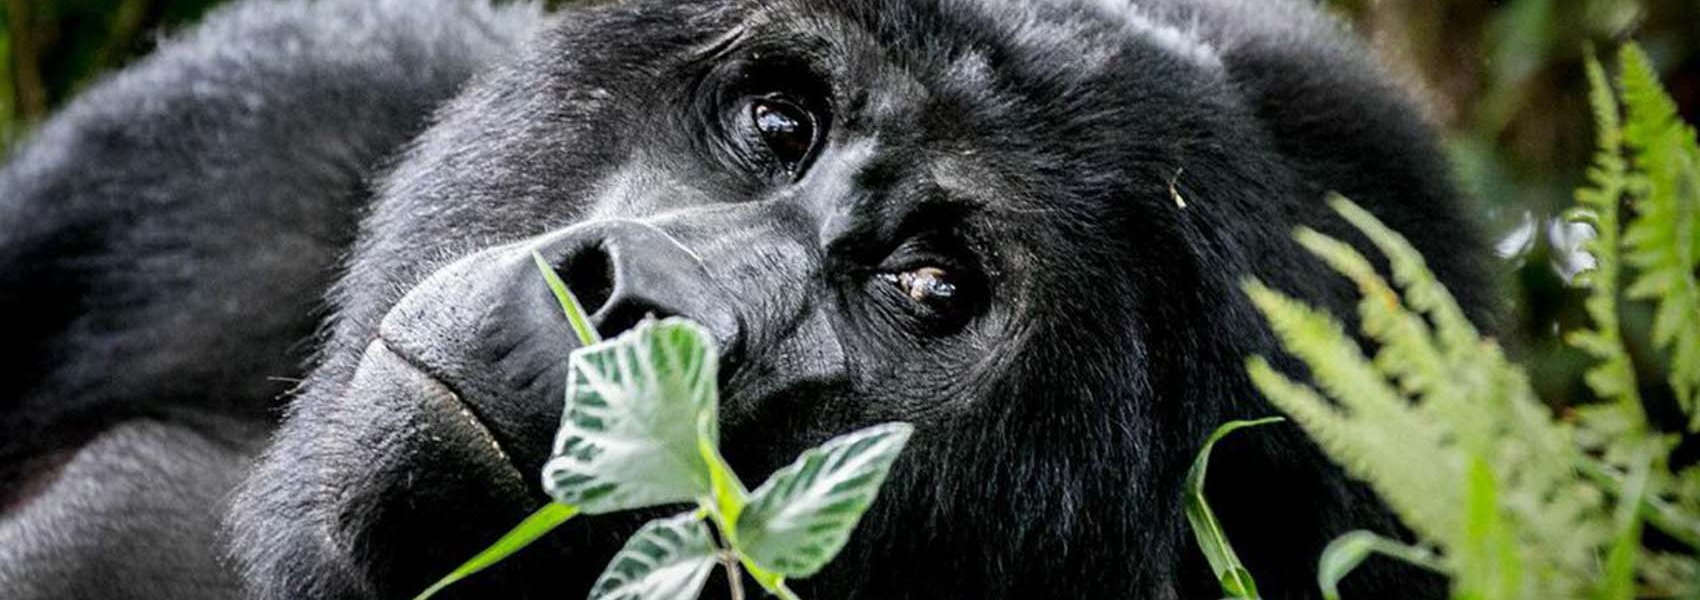 Gorilla trekking Rwanda holiday packages